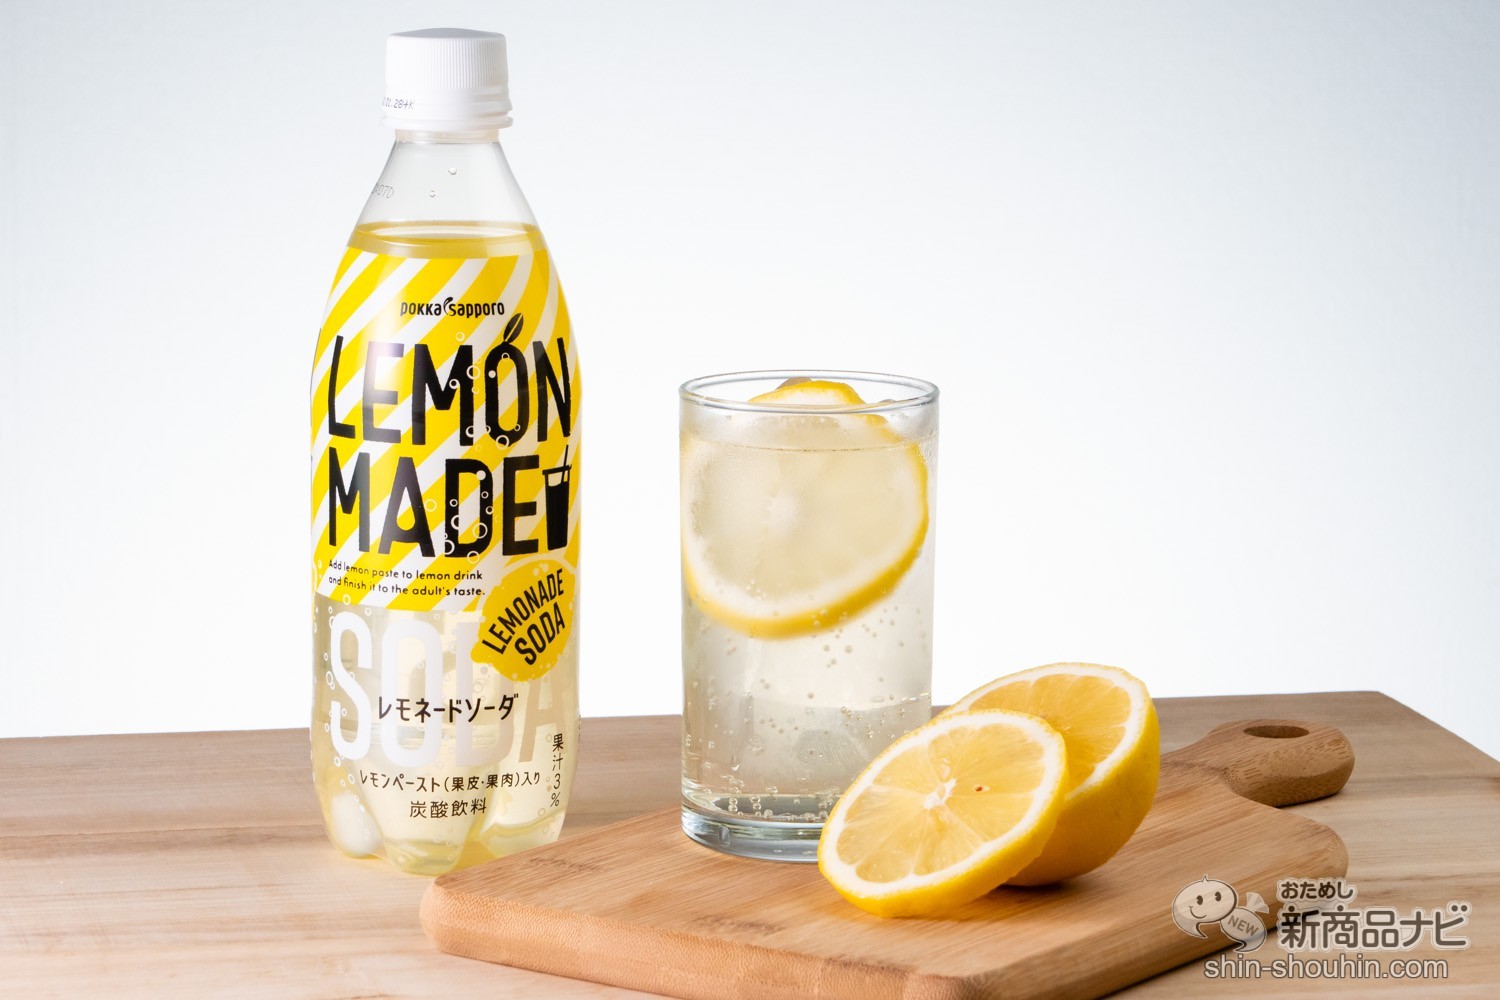 おためし新商品ナビ » Blog Archive » 思った以上のレモン感！ 果皮の苦みもキリっと爽快な『LEMON MADE レモネードソーダ』！